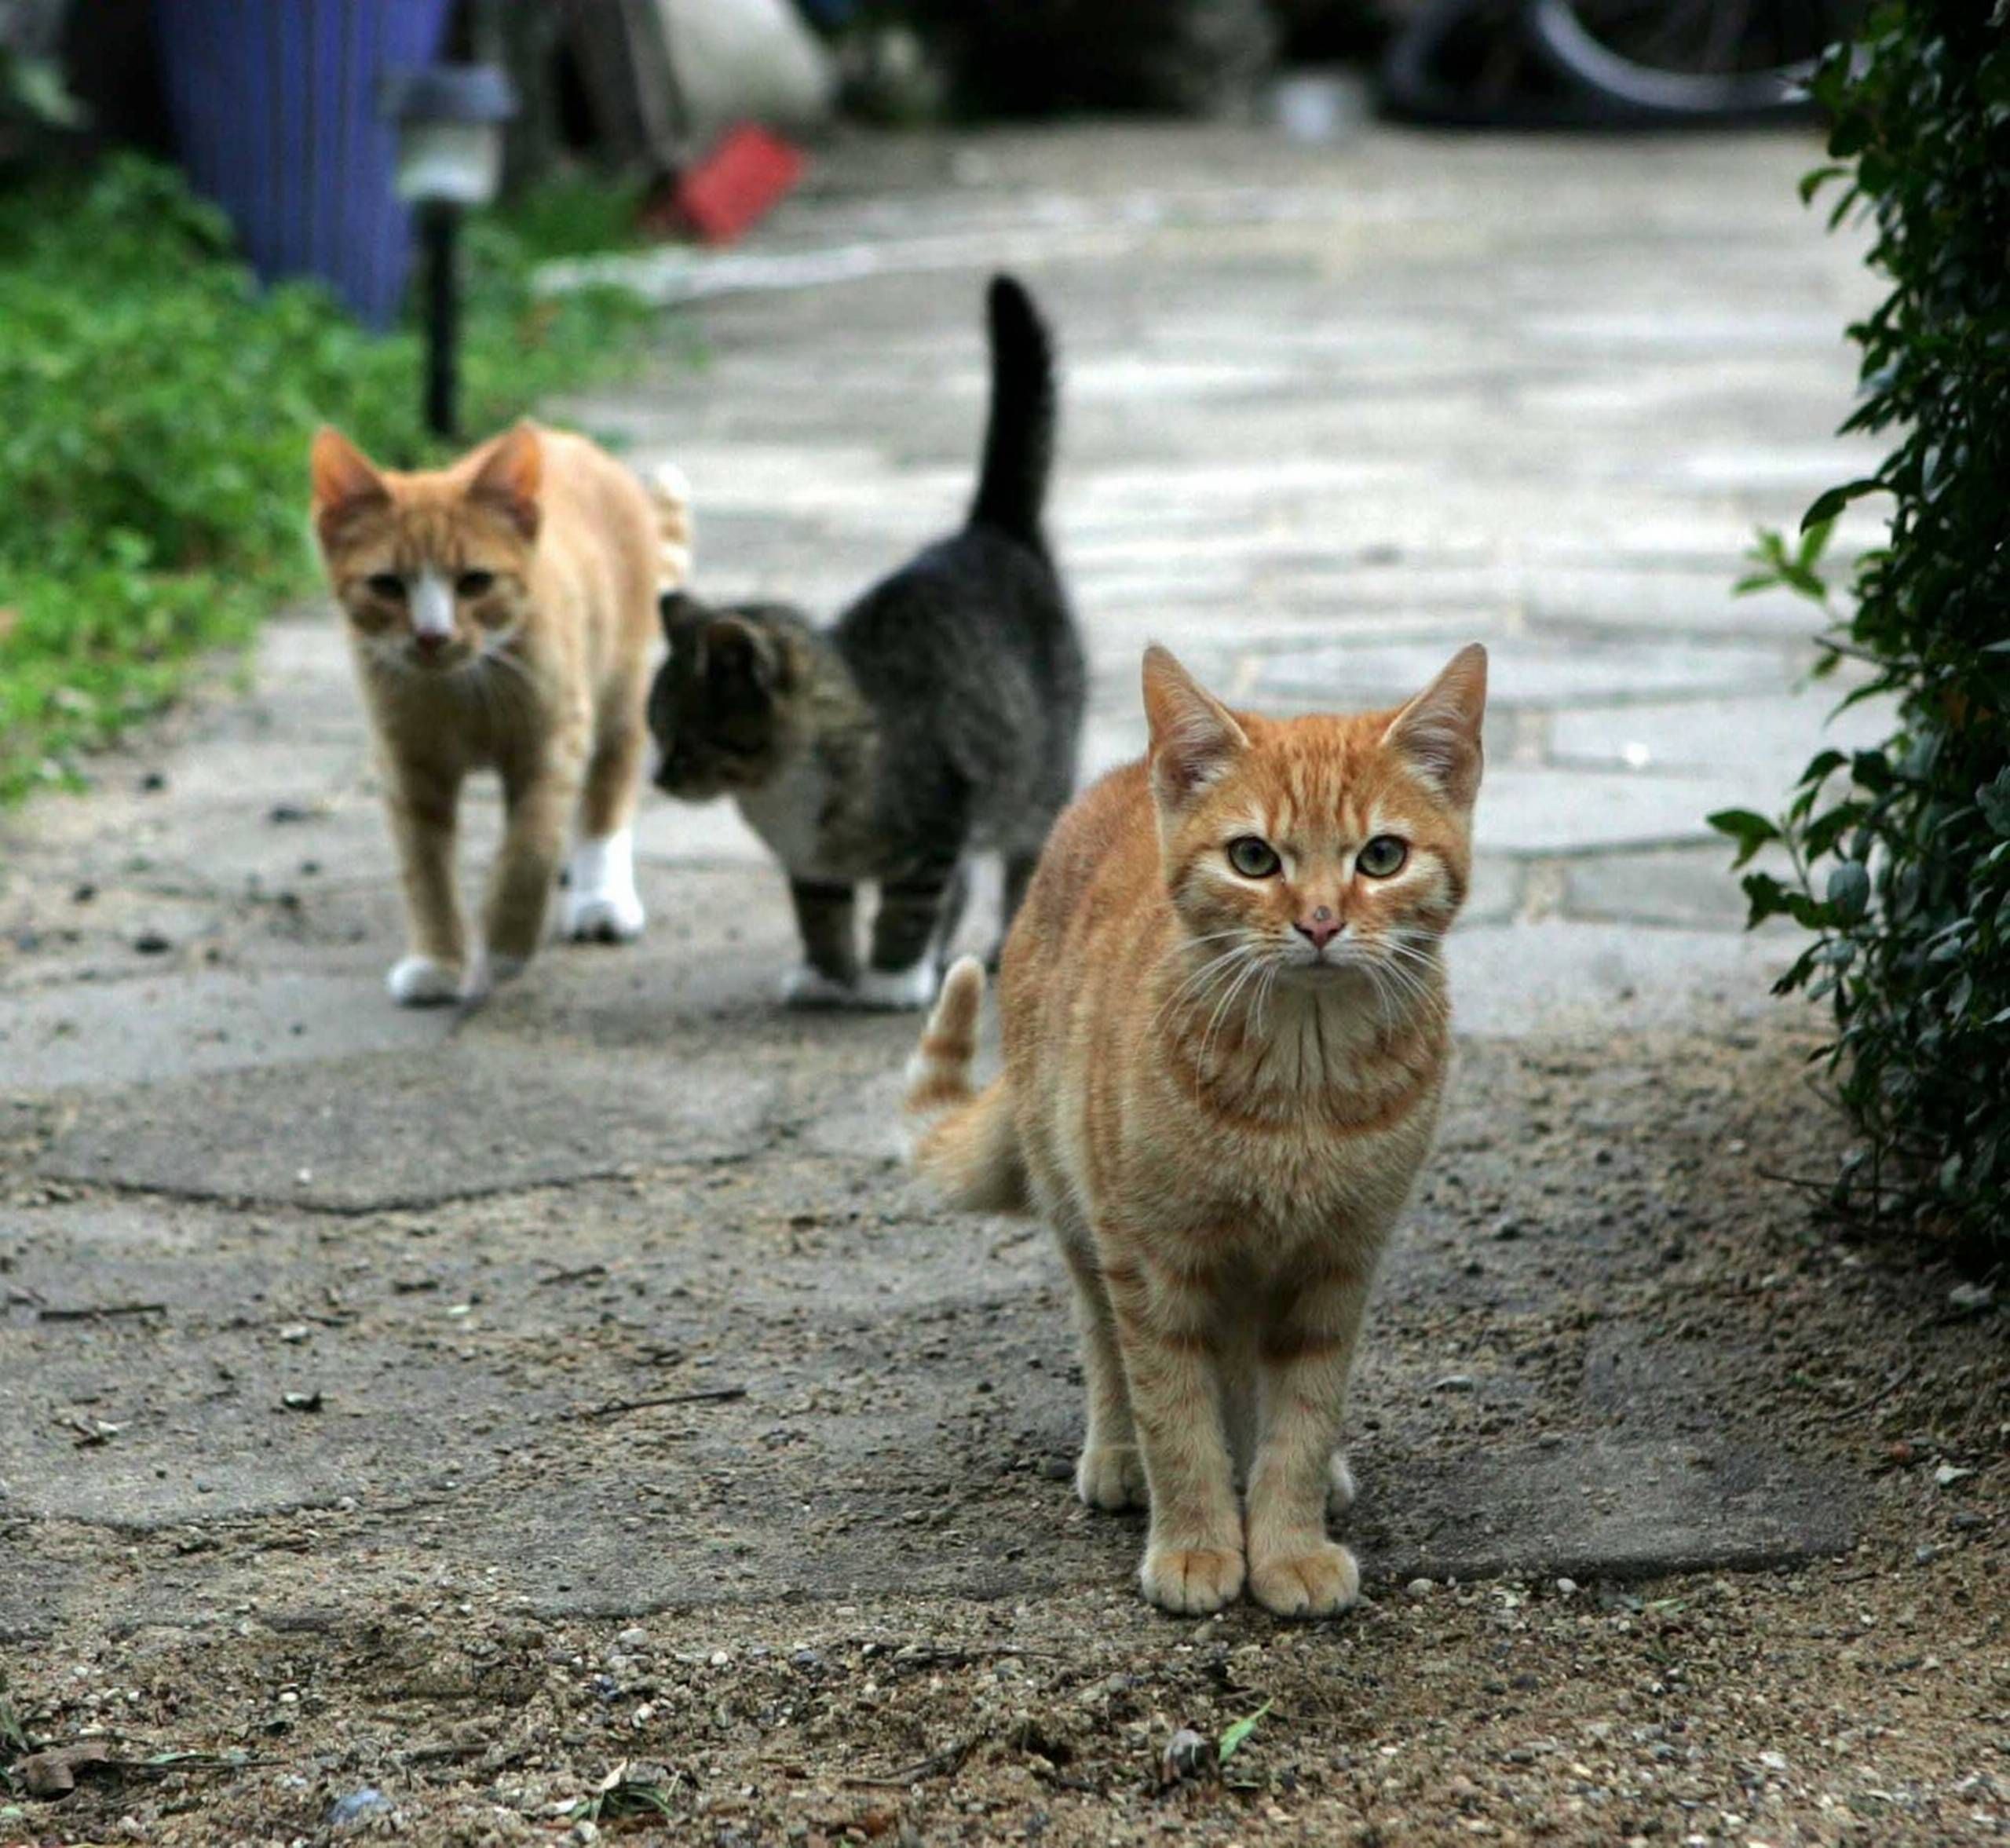 Jobopslag går viralt: Flyt til græsk ø pas katte